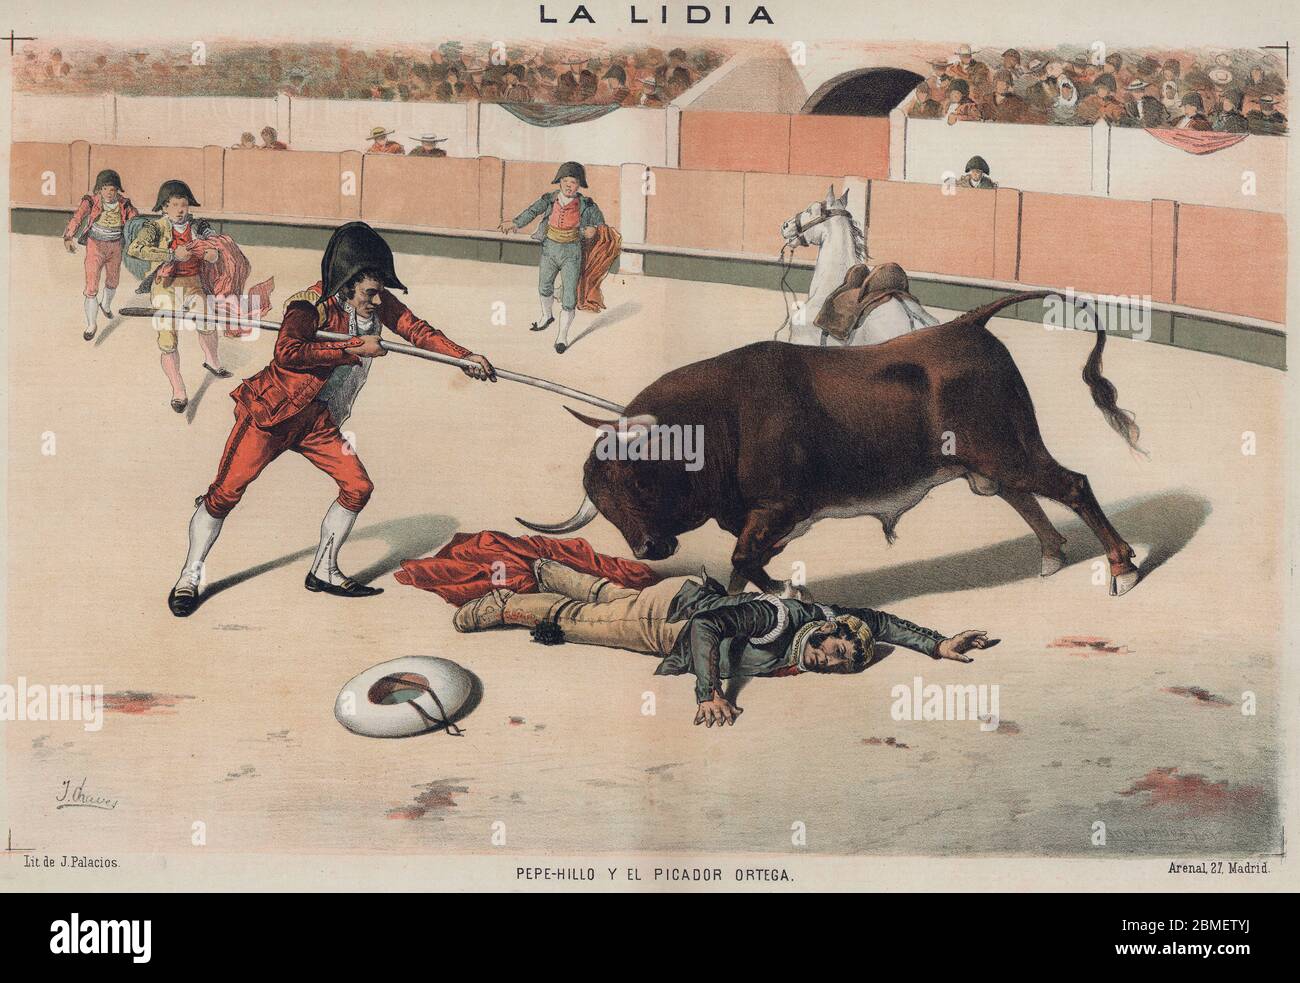 La lidia. José Delgado Guerra (1754-1801), Pepe-Hillo, caído en la arena a los pies del toro, defendido por el picador Ortega. Año 1886. Stock Photo